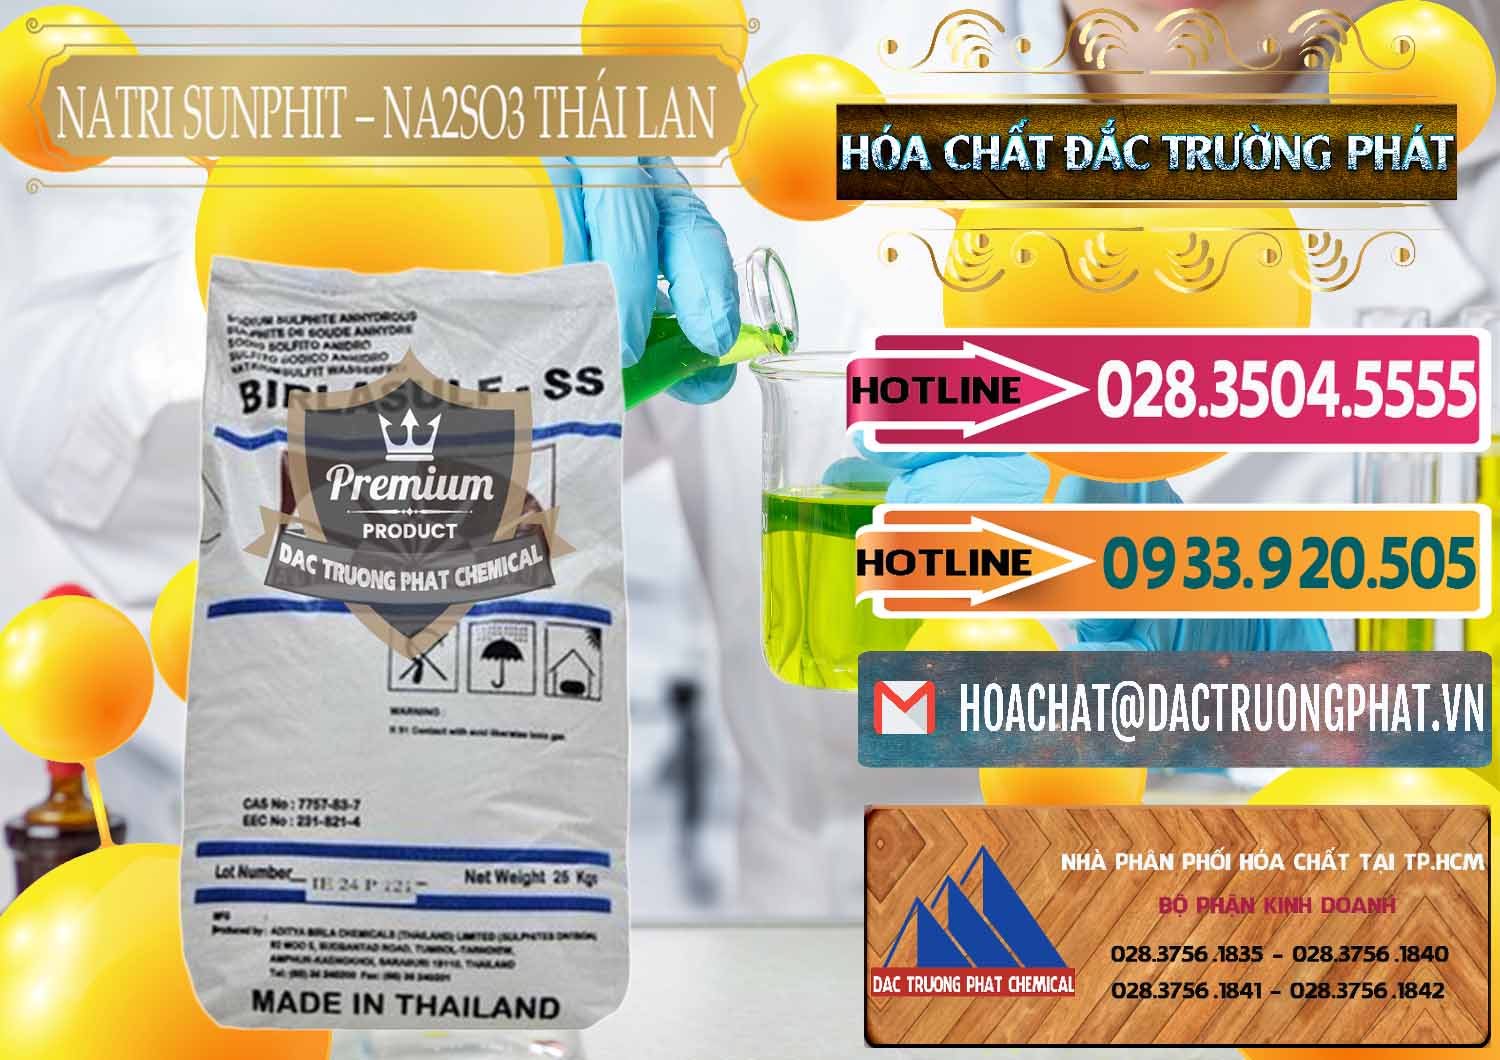 Cty nhập khẩu - bán Natri Sunphit - NA2SO3 Thái Lan - 0105 - Chuyên nhập khẩu và cung cấp hóa chất tại TP.HCM - dactruongphat.vn